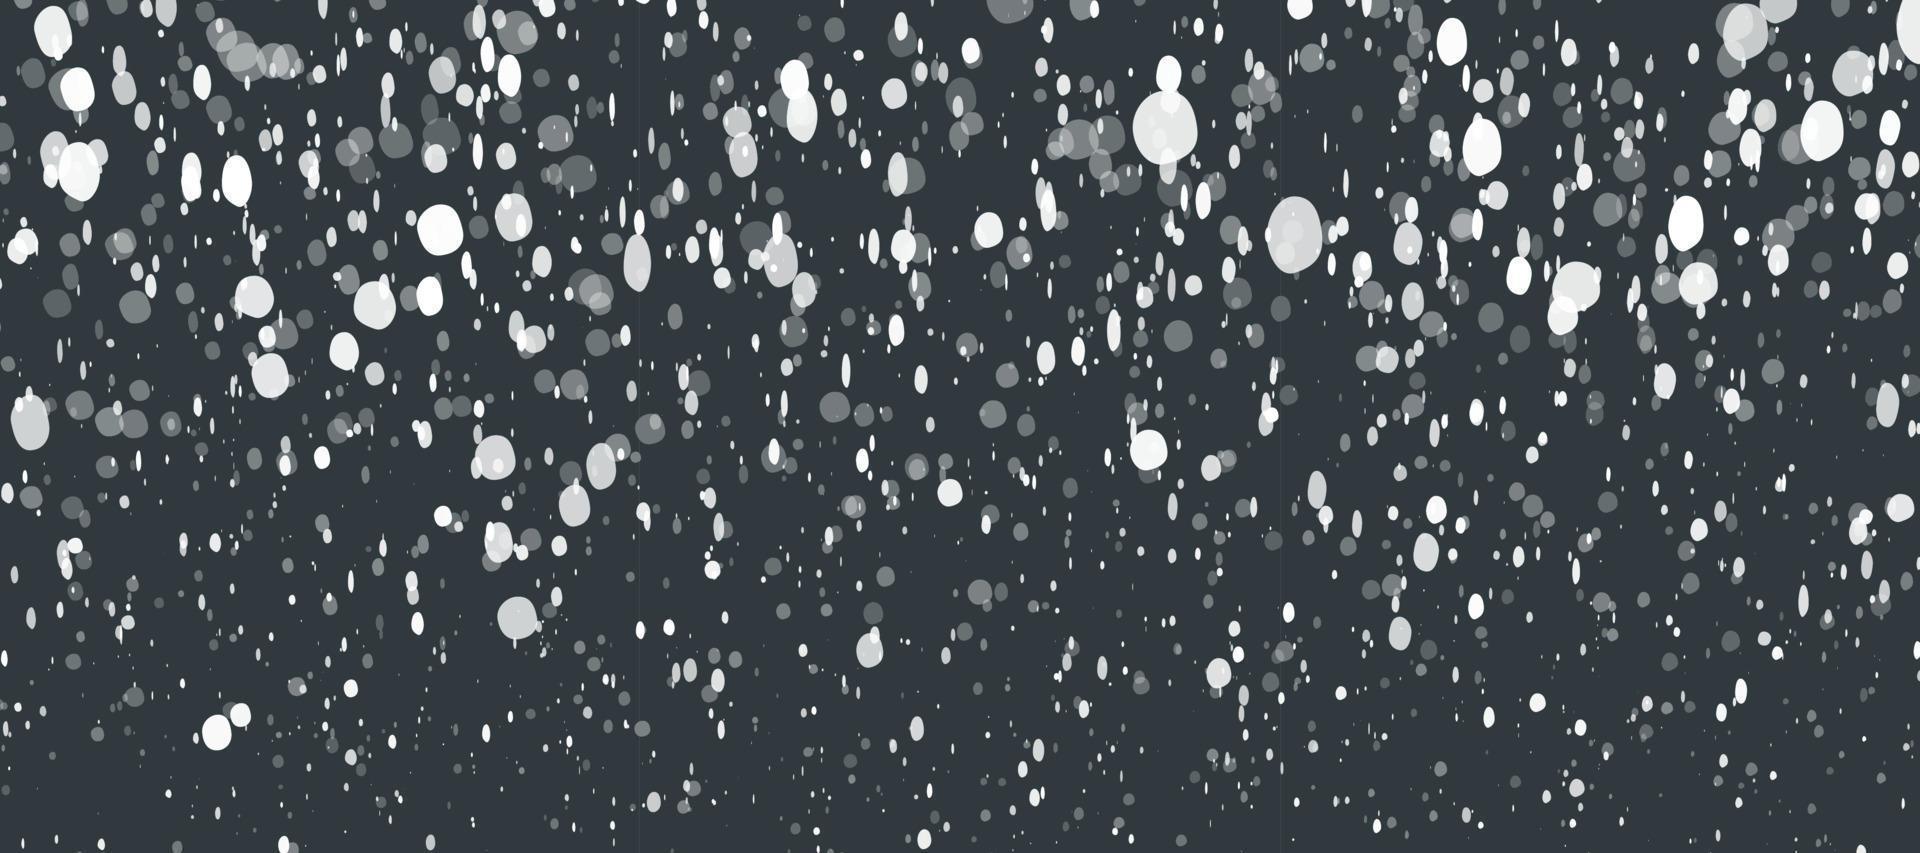 fondo de invierno de puntos de nevadas aleatorias. superposición de fotos navideñas con efecto bokeh. ventisca de nieve cayendo vector